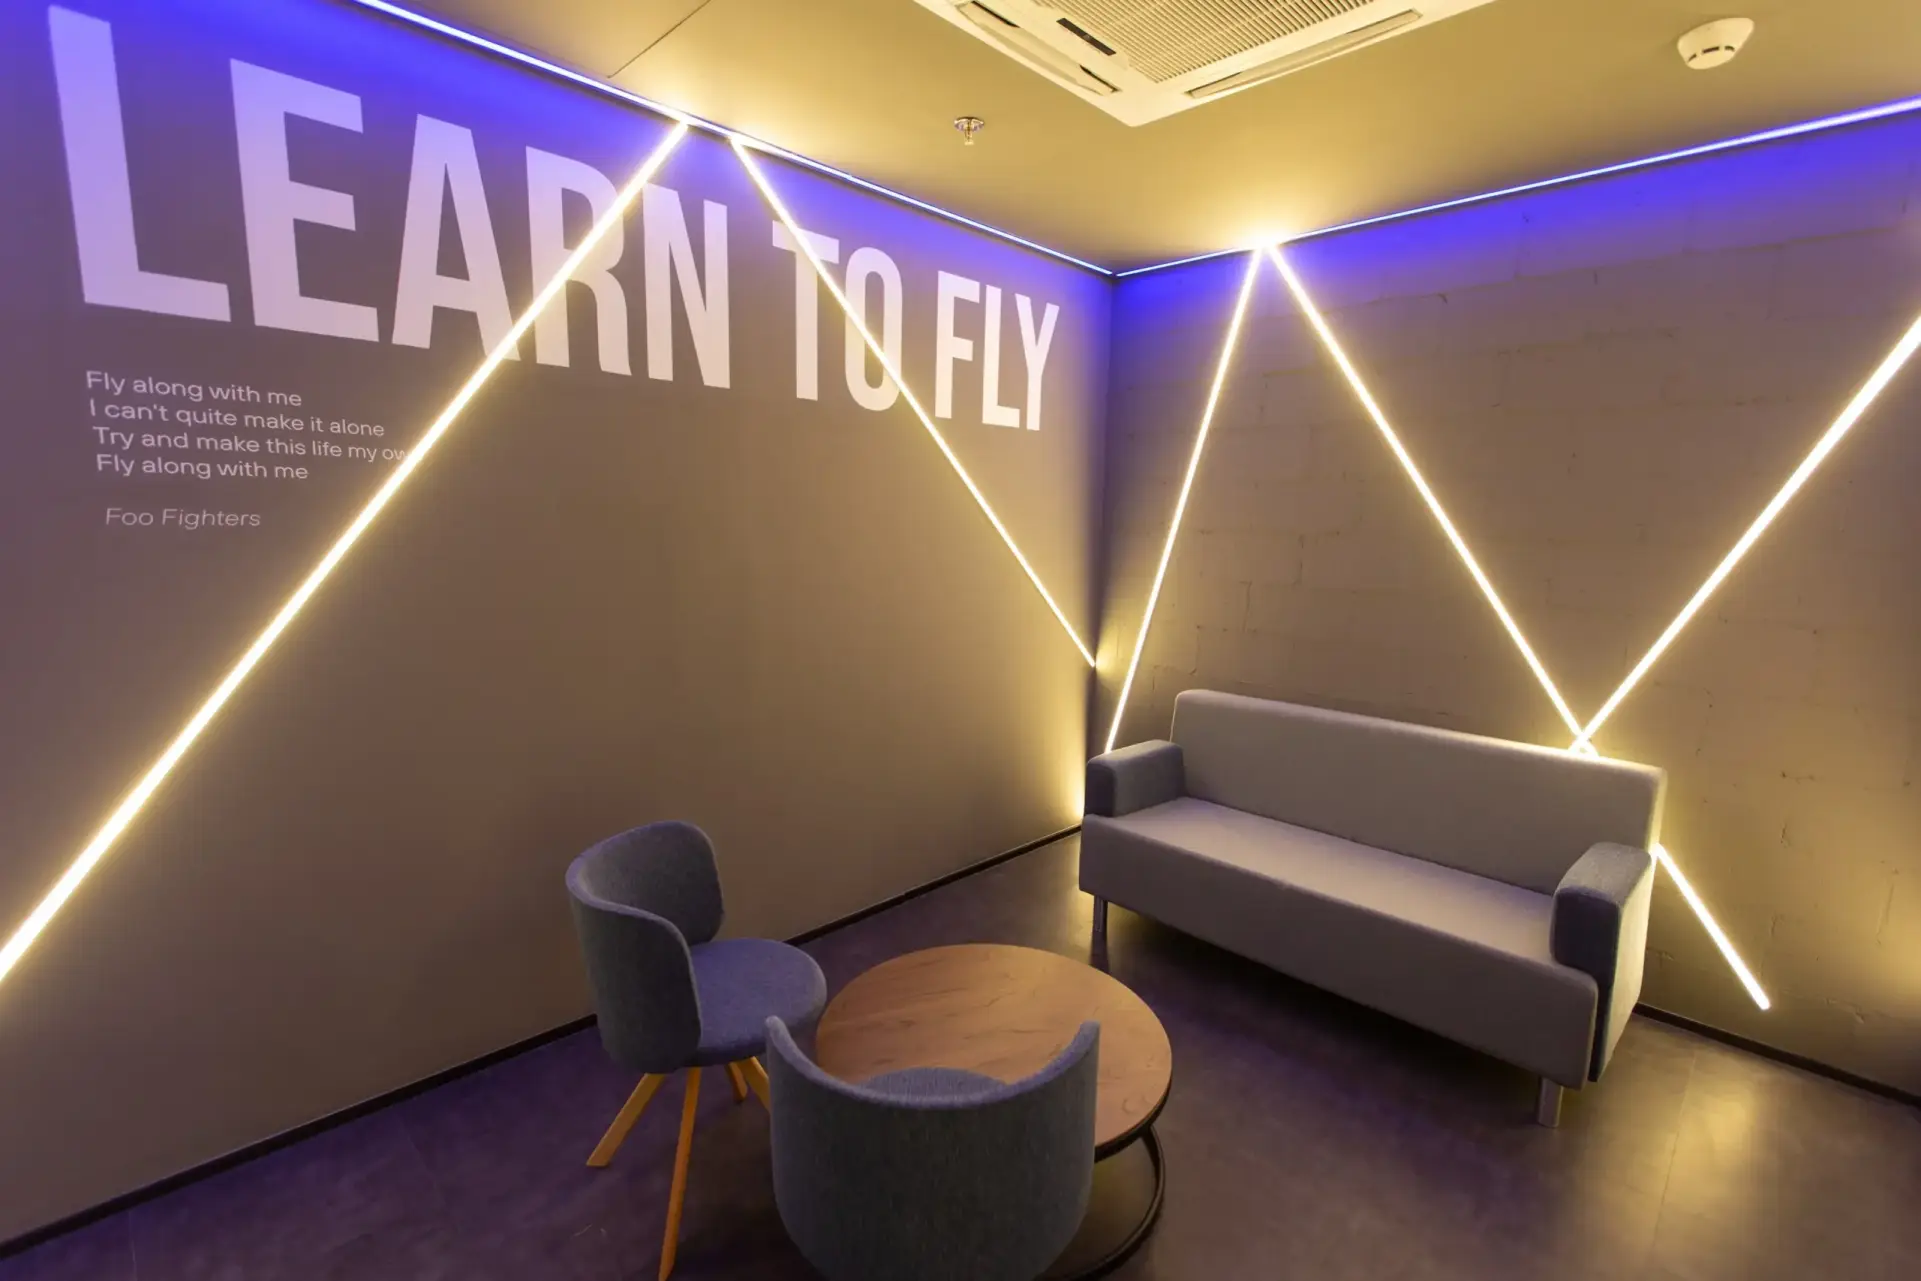 Sala de trabalho, onde uma parede possui trecho da música “Learn to Fly” do Foo Fighters